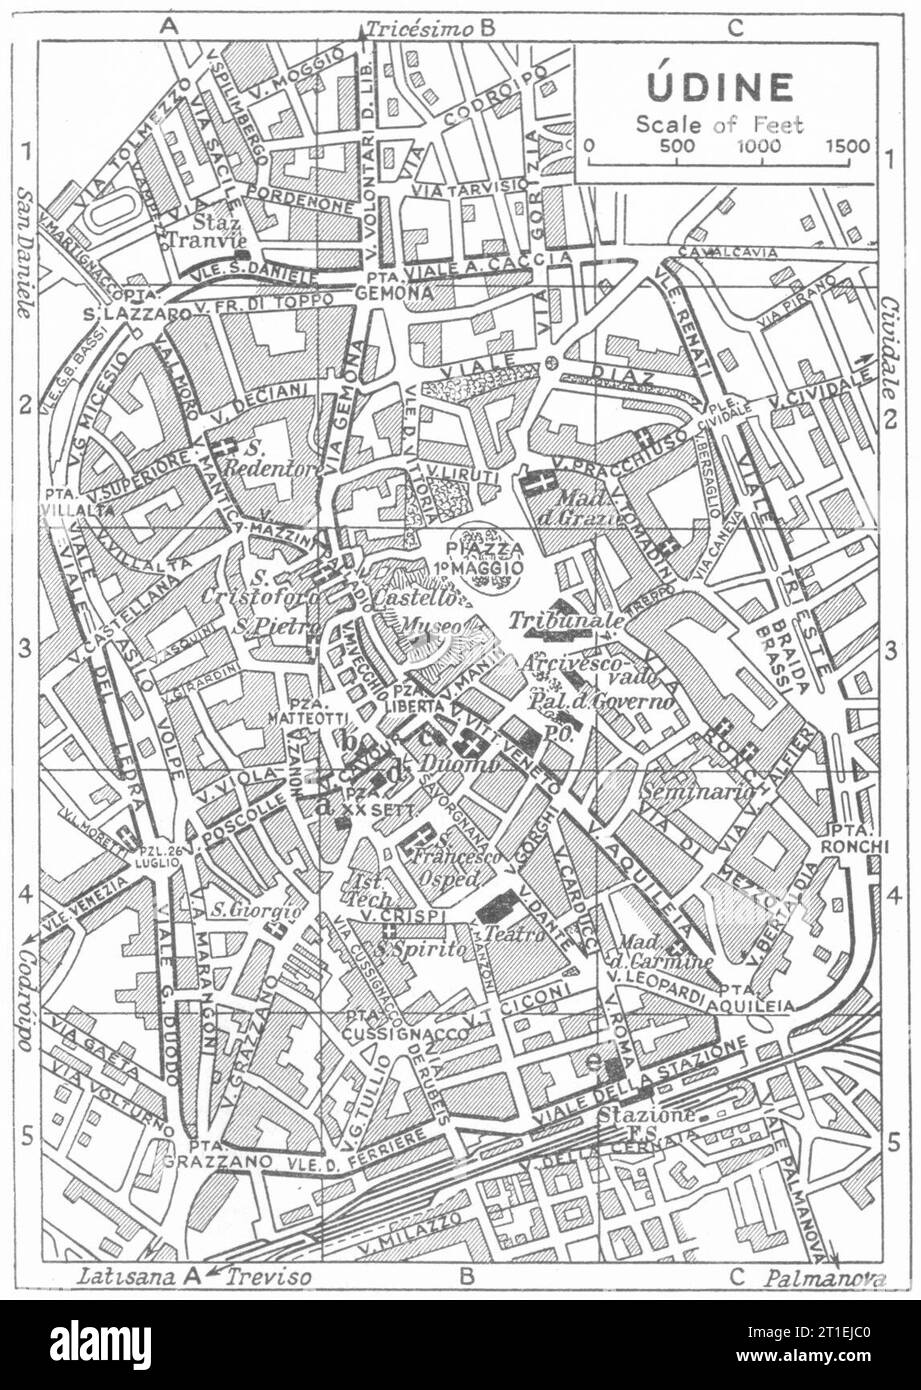 Pianta della città DI UDINE. Italia 1953 vecchia mappa d'epoca Foto Stock